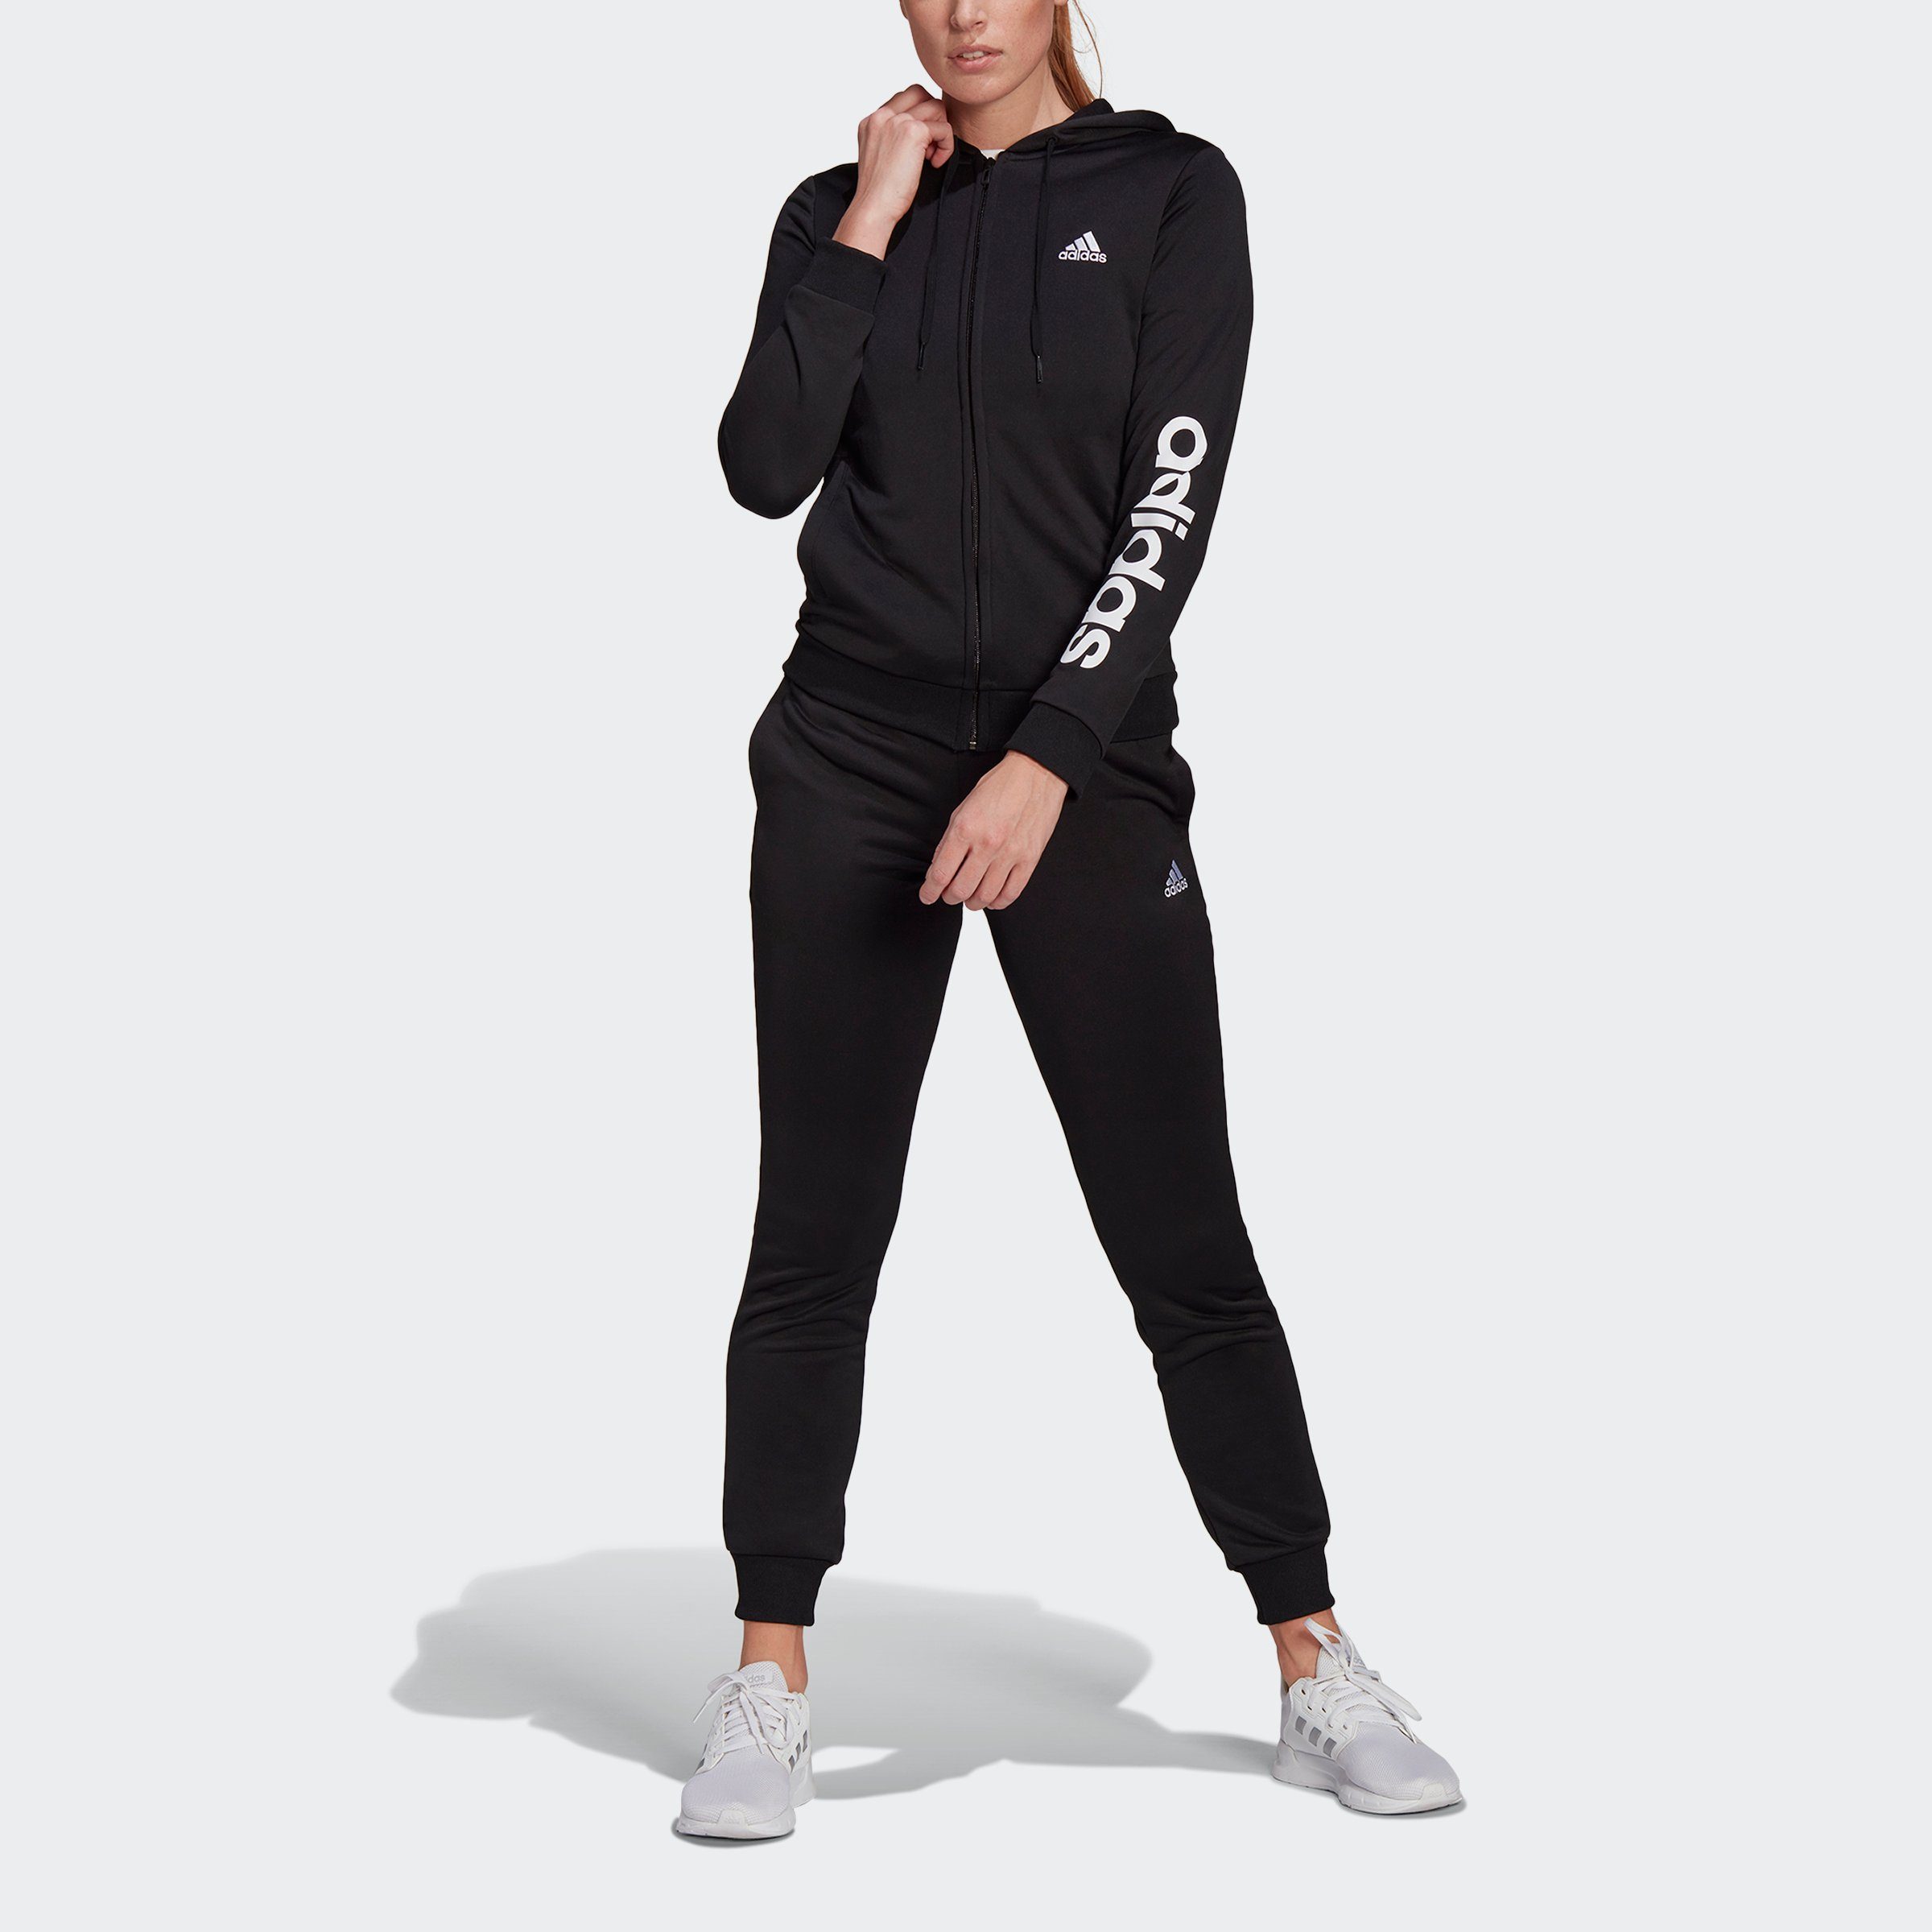 Adidas Damen Jacke Pink Freizeit Fitness Sport in S Trend Artikel Frauen  NEU 